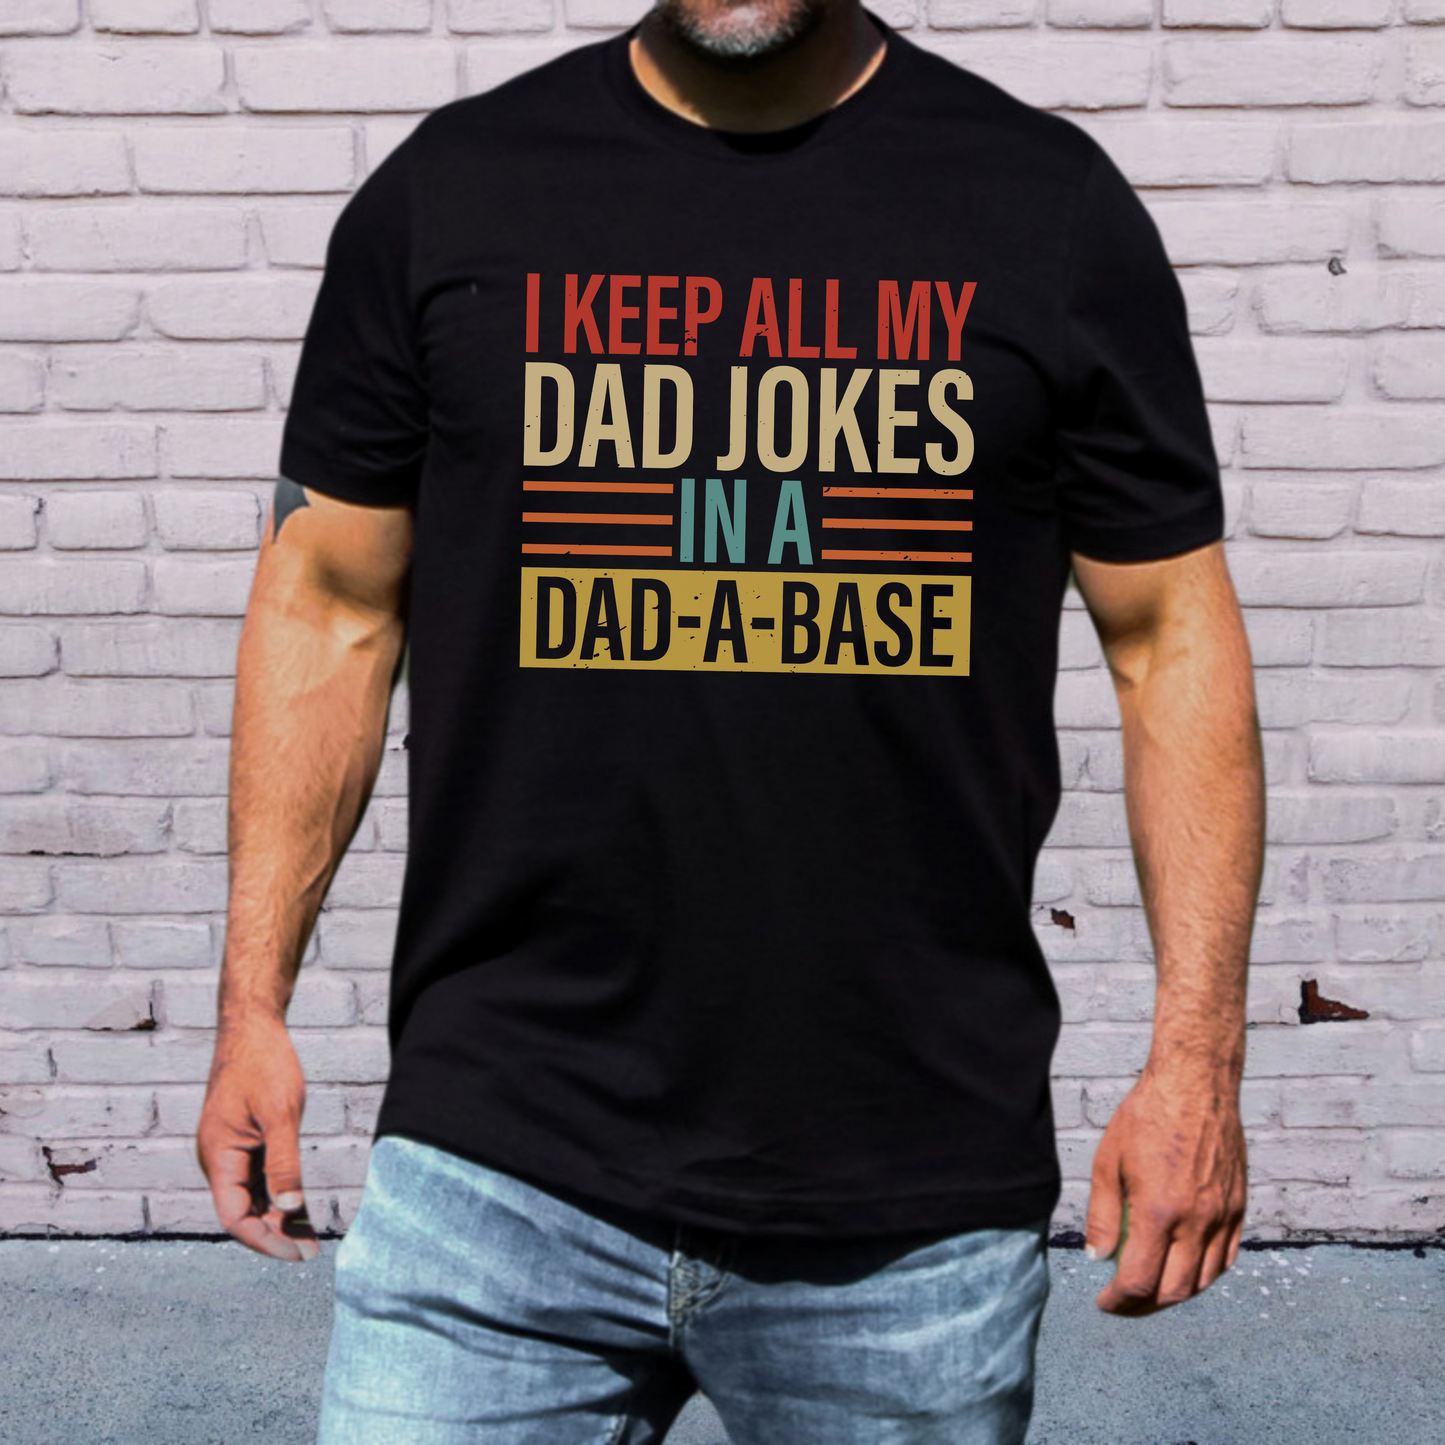 Dad Jokes T-shirt